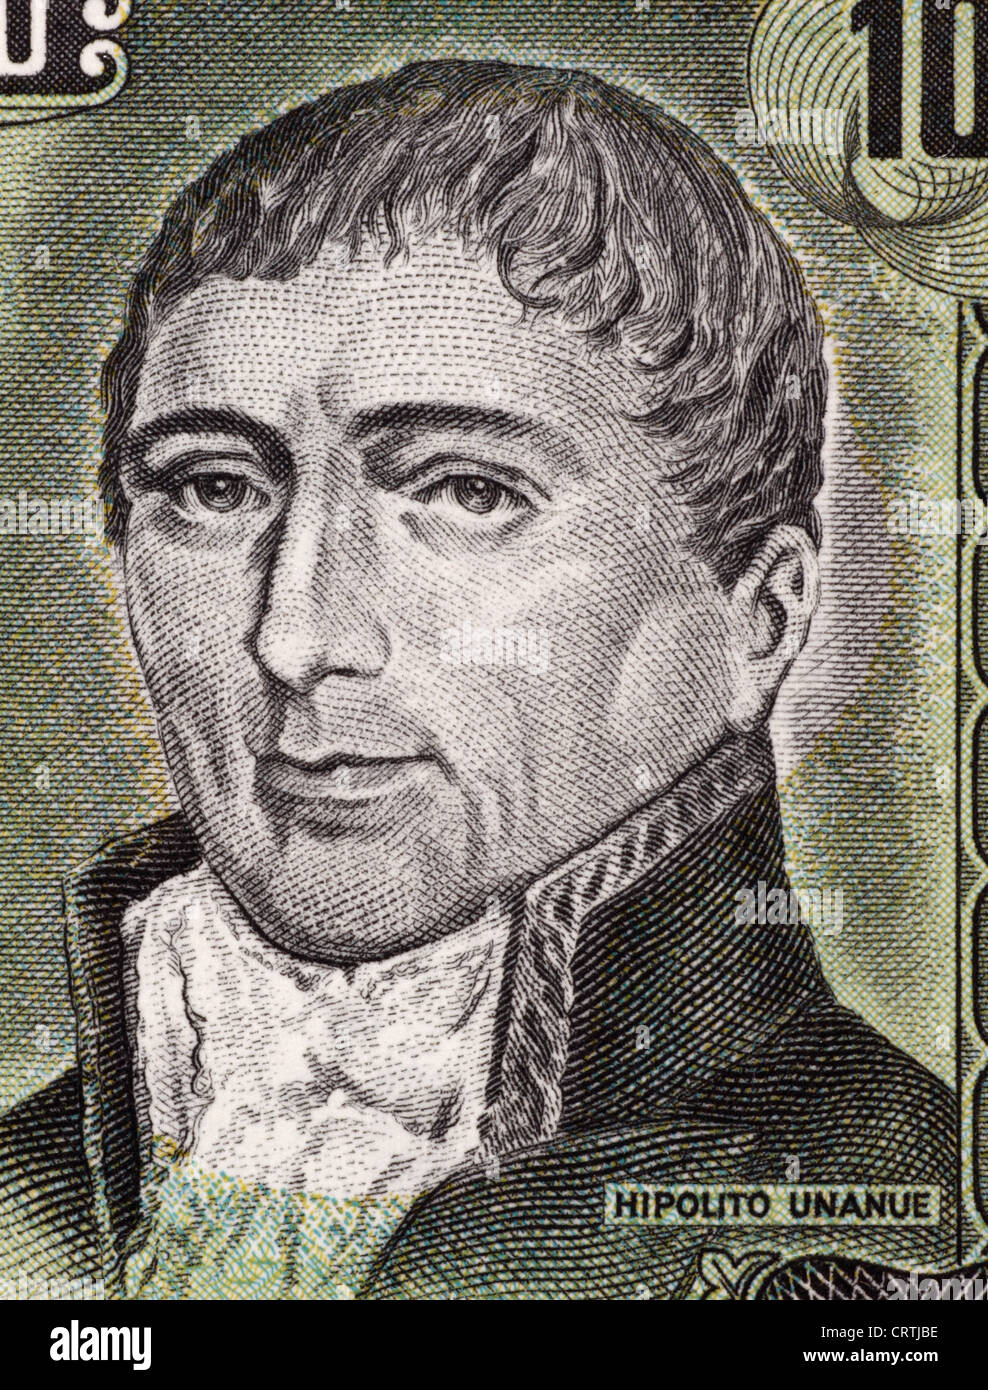 Hipolito Unanue (1755-1833) auf 100 Soles De Oro 1975 Banknote aus Peru. Peruanische Arzt und Politiker. Stockfoto